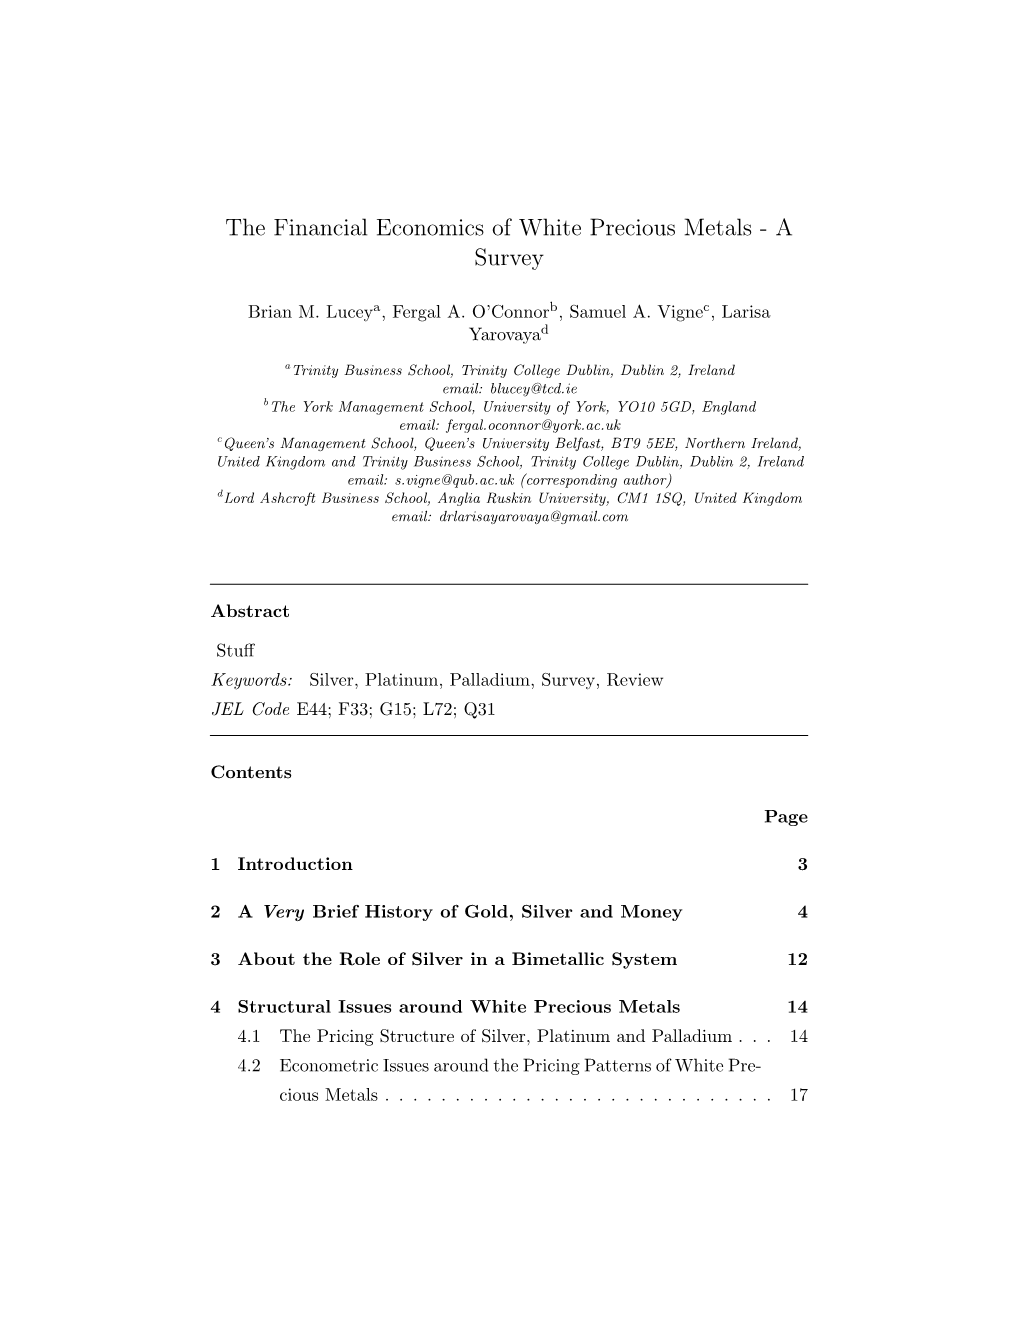 The Financial Economics of White Precious Metals - a Survey